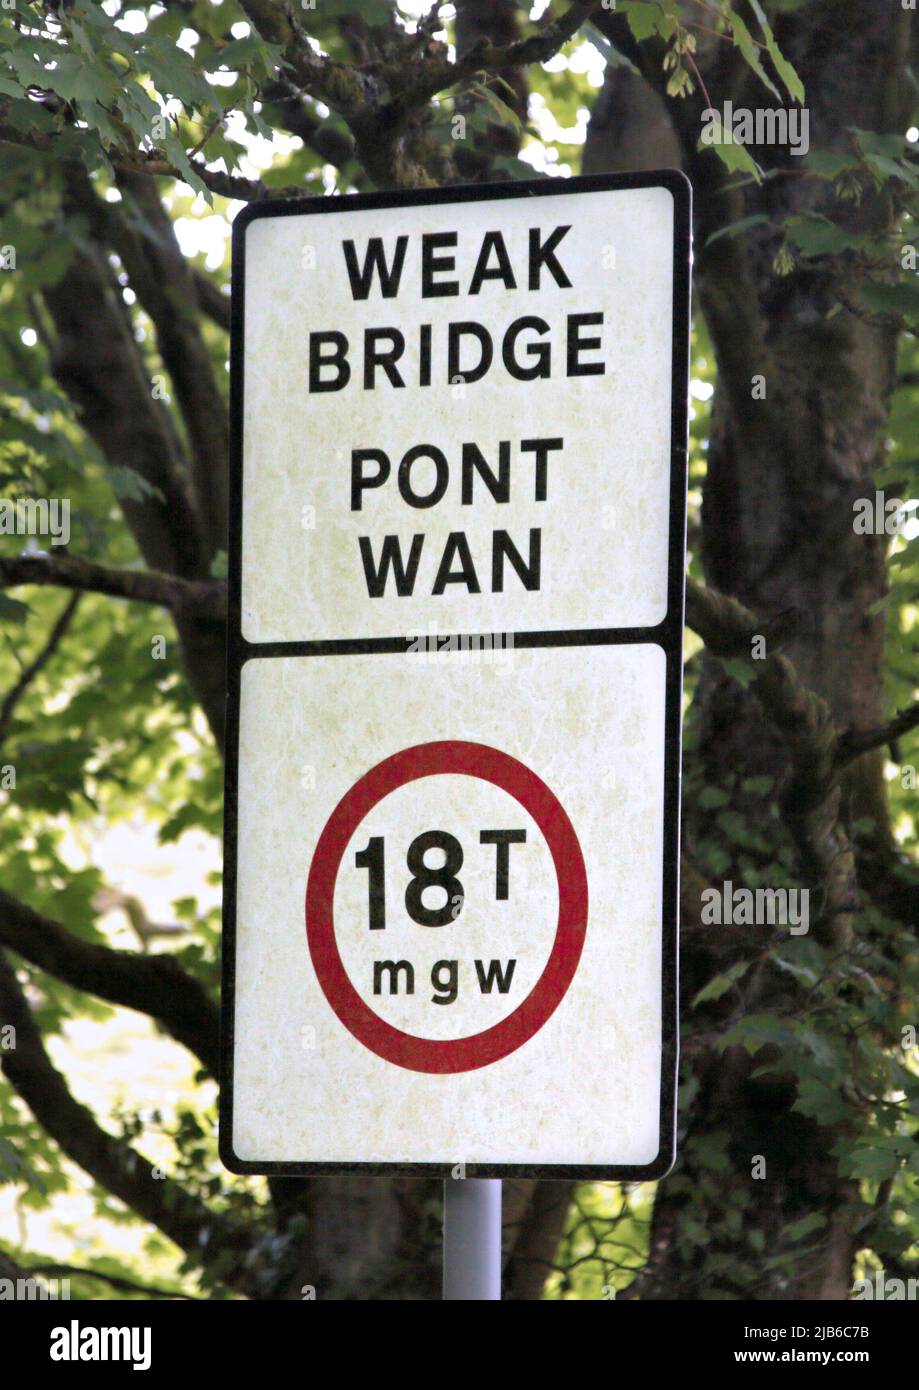 Signalisation routière représentant le pont faible/pont WAN, près de Coedpoeth, pays de Galles Banque D'Images